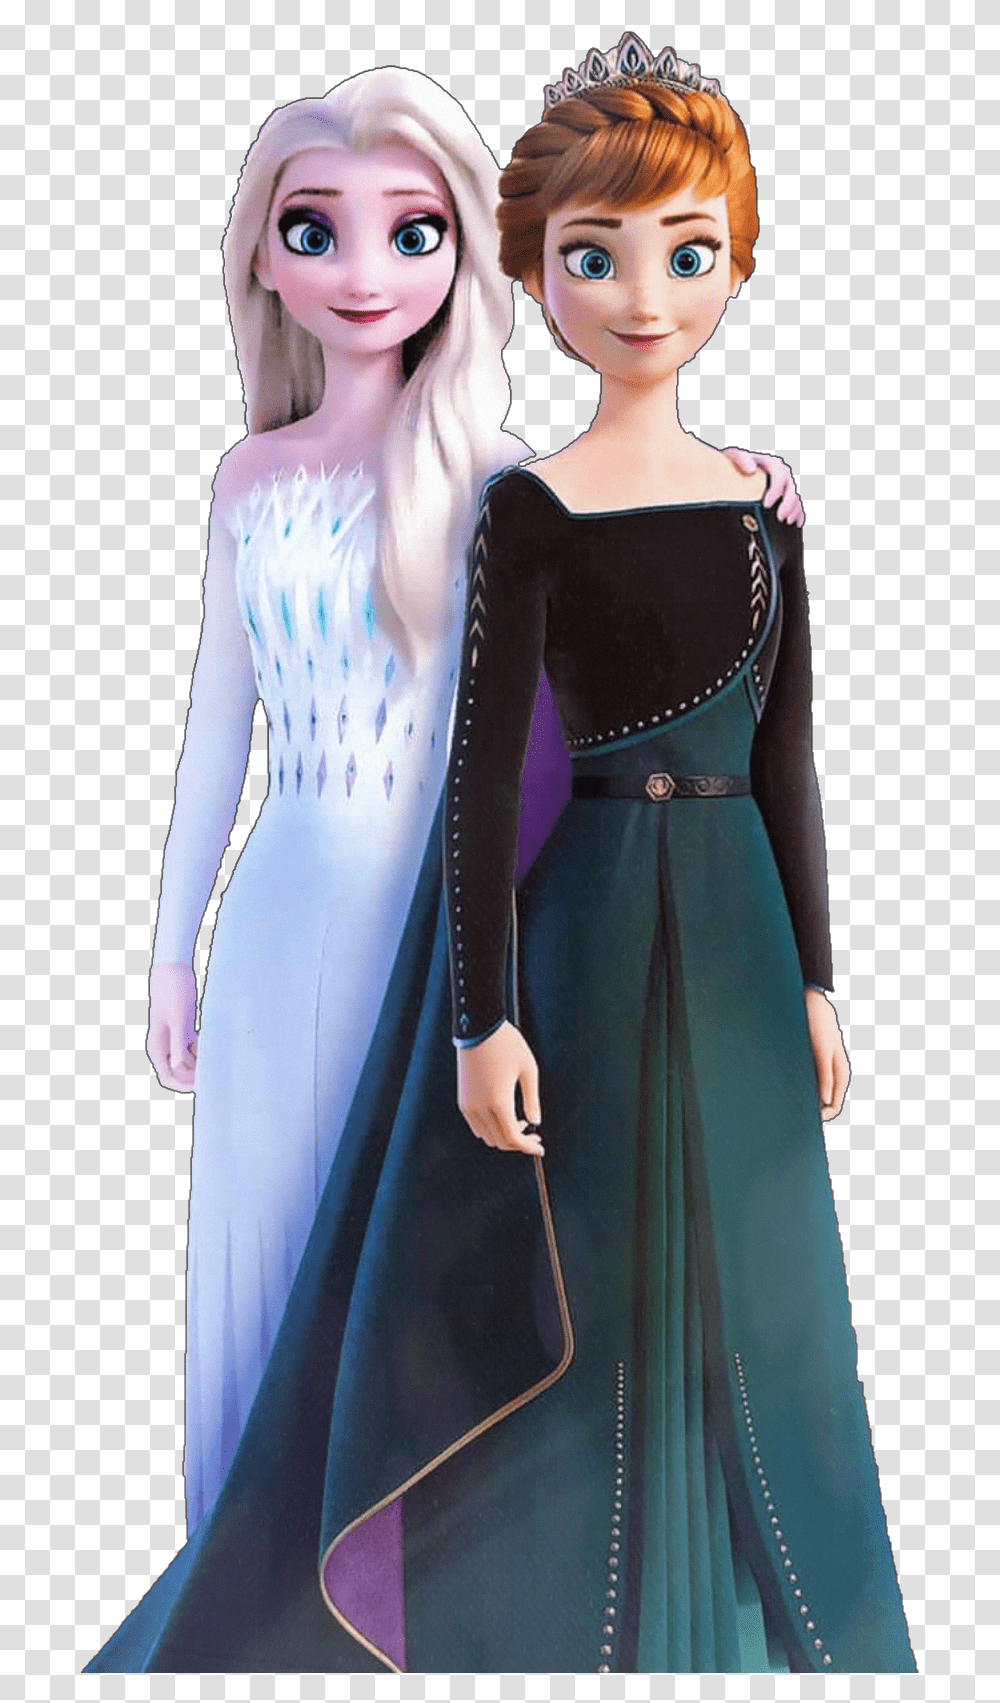 Elsa Anna Elsaandanna Frozen Frozen2 Frozen 2 Queen Anna, Dress, Doll, Sleeve Transparent Png